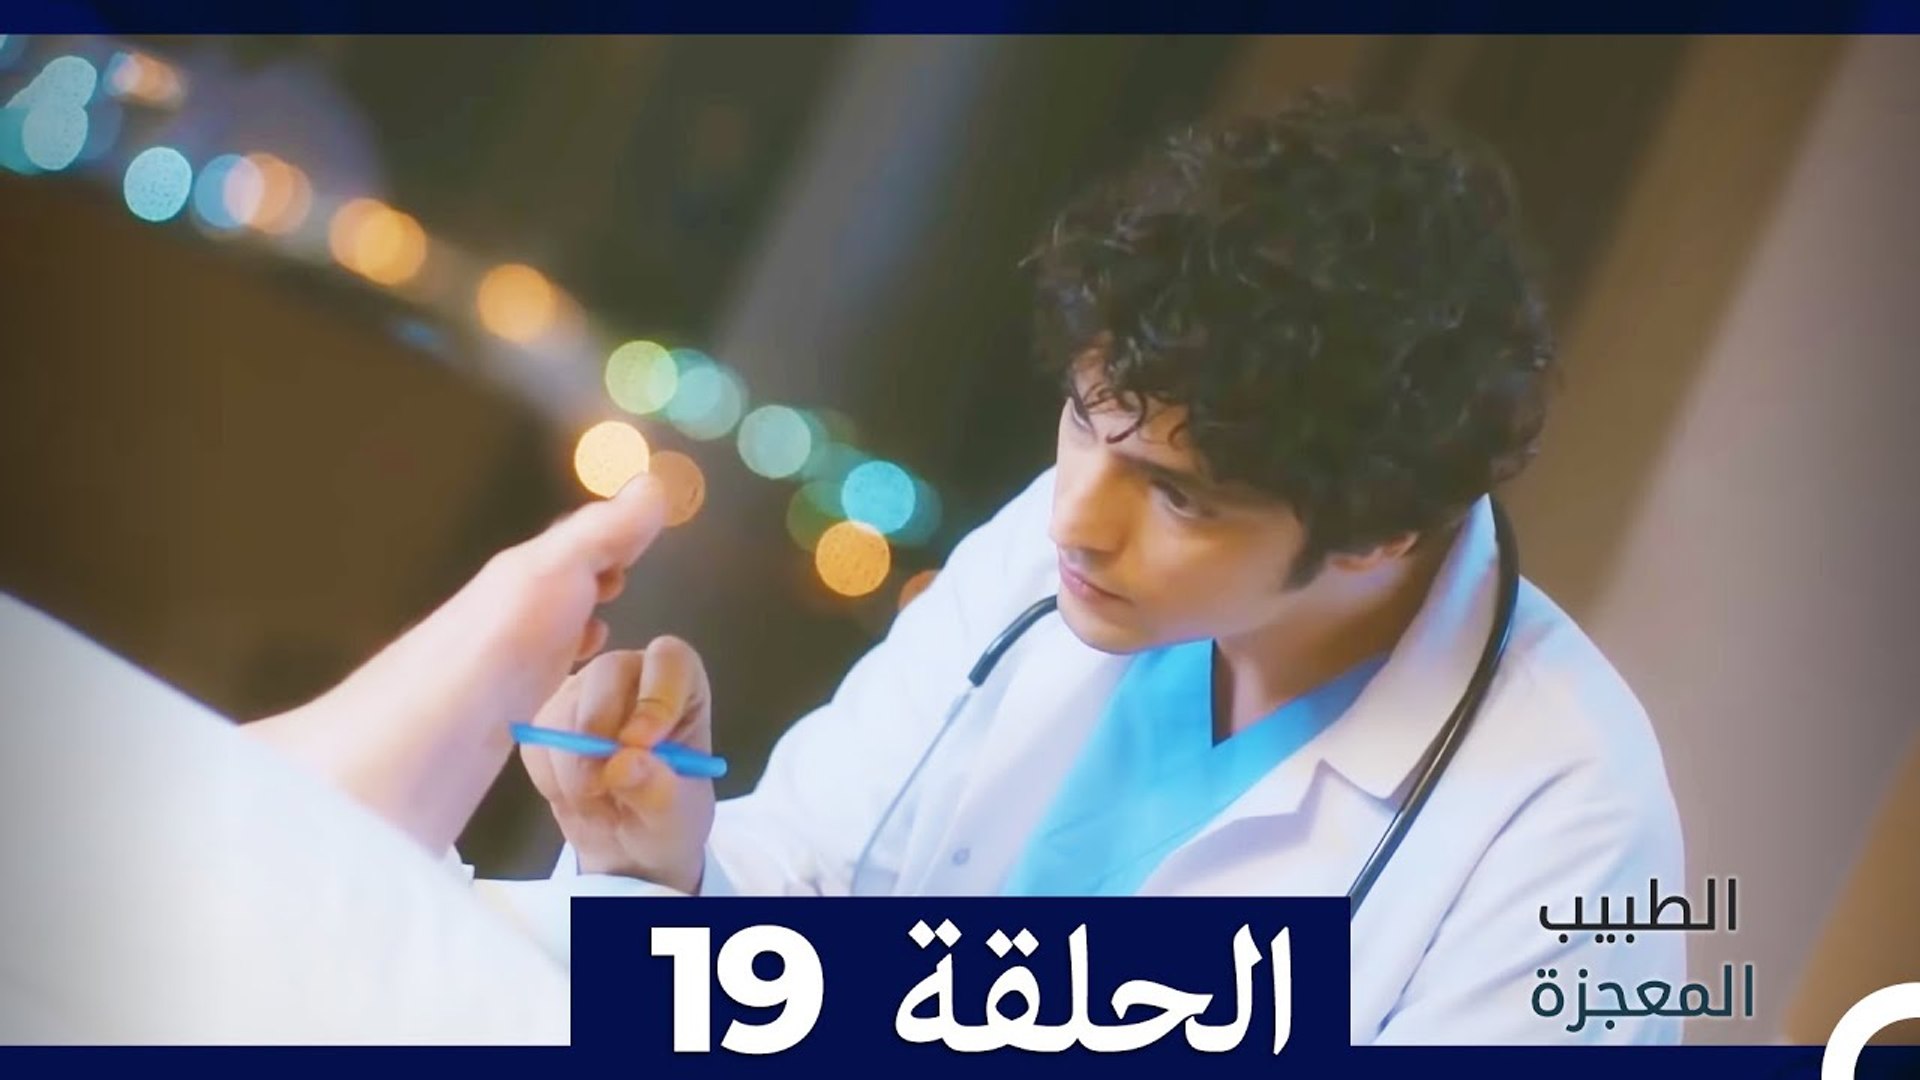 الطبيب المعجزة الحلقة 19 (Arabic Dubbed) - فيديو Dailymotion